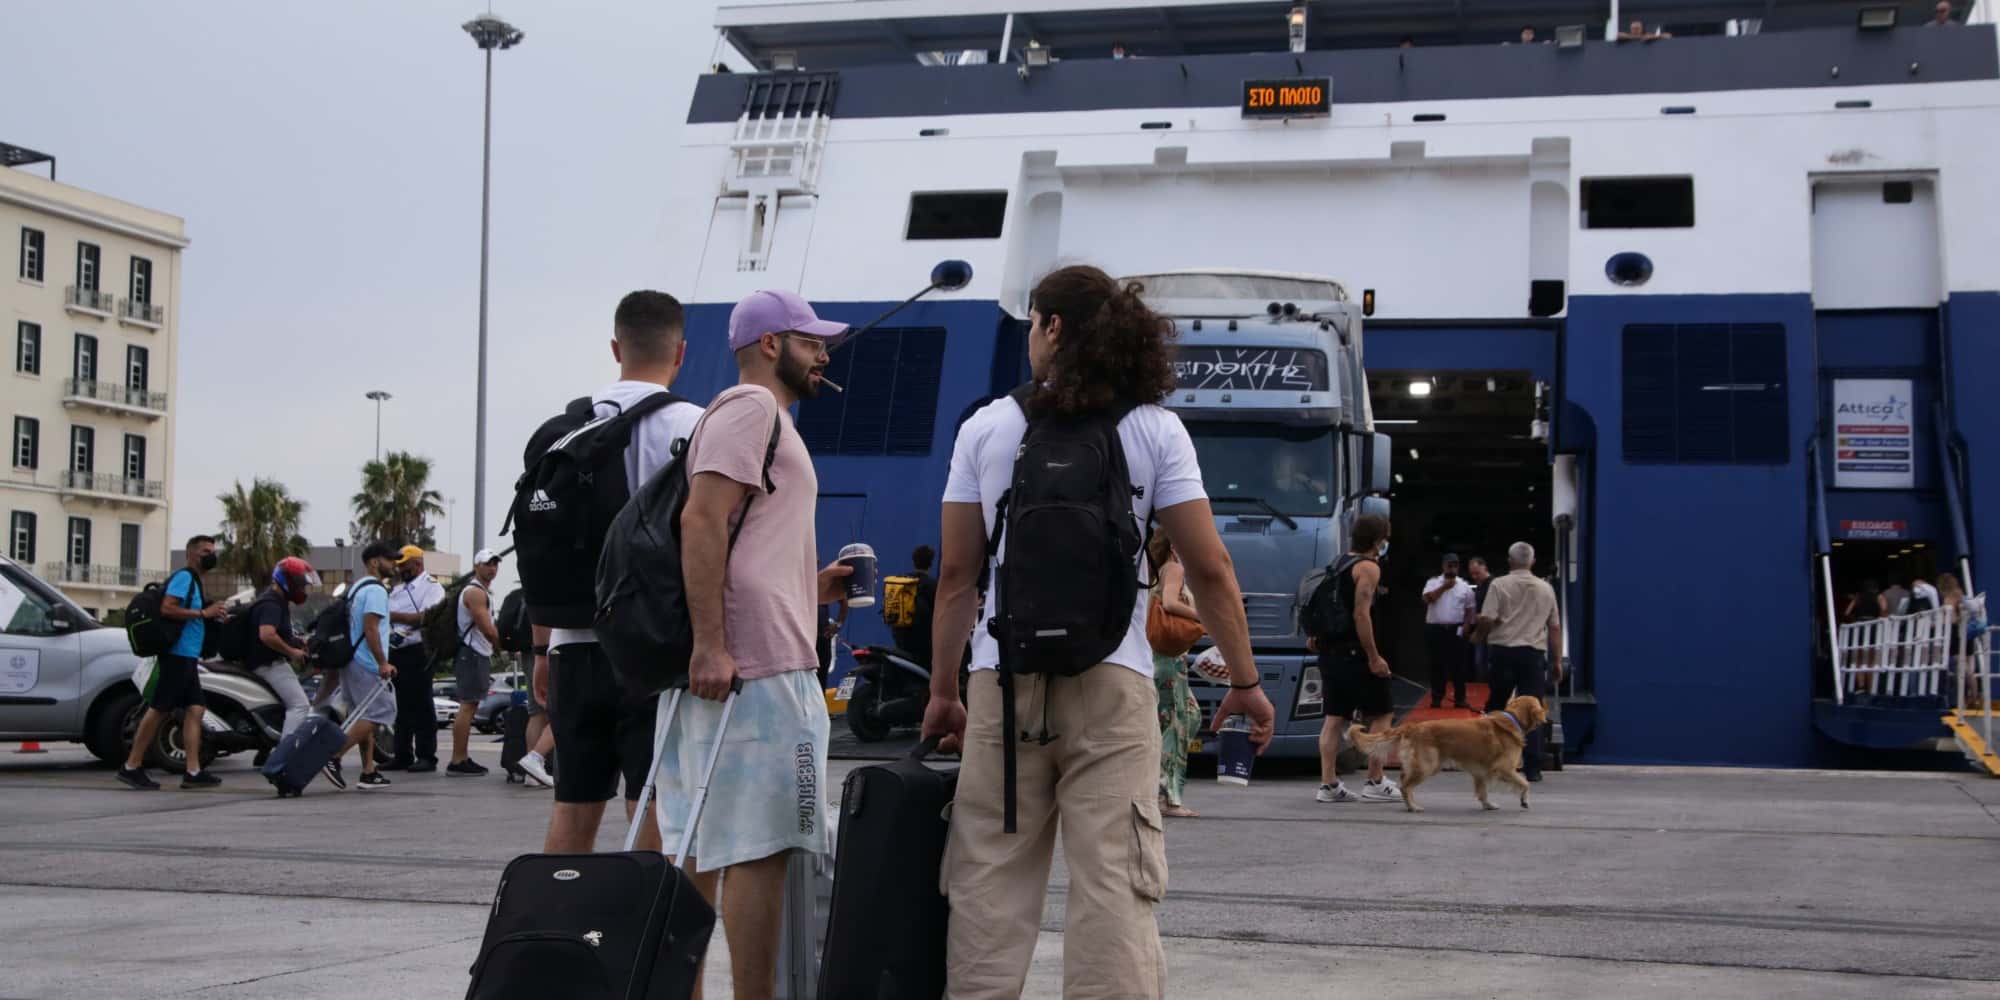 Ταξιδιώτες ετοιμάζονται να επιβιβαστούν σε πλοία στο λιμάνι του Πειραιά